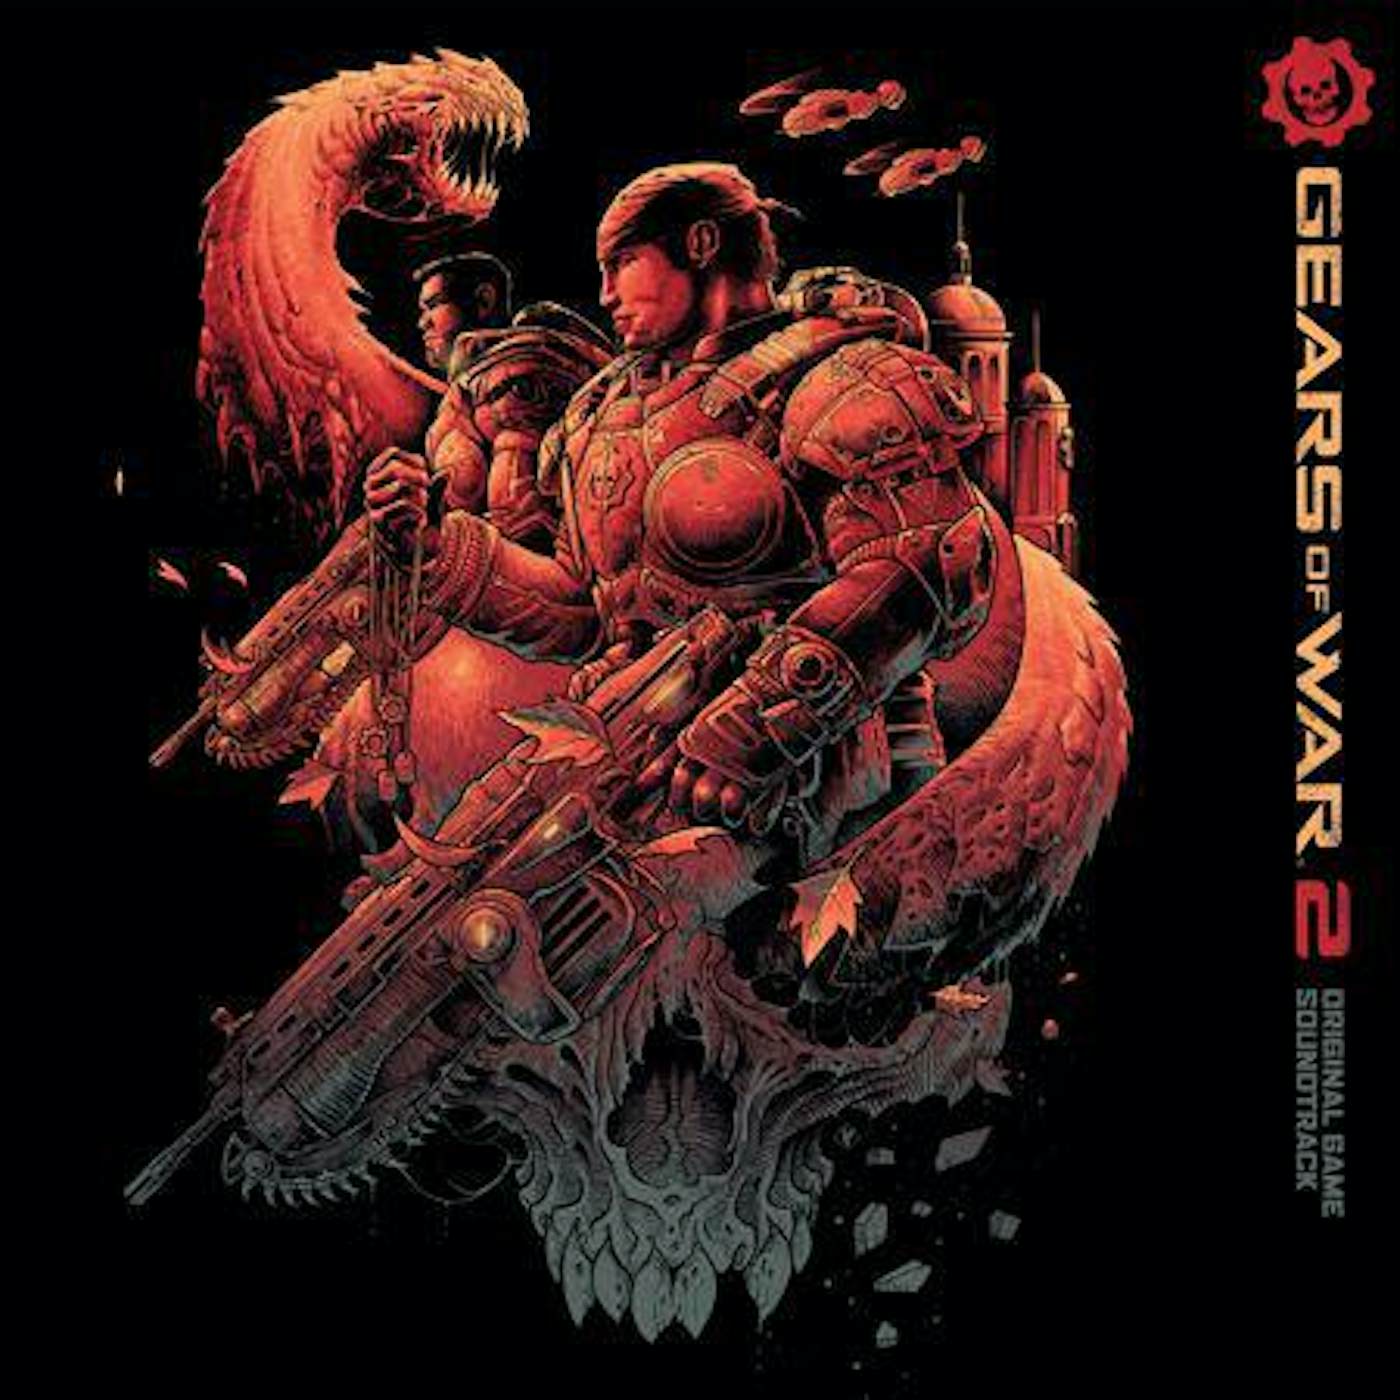 Steve Jablonsky Gears of War 2 Original Soundtrack (2LP/180g/Red vinyl)Record